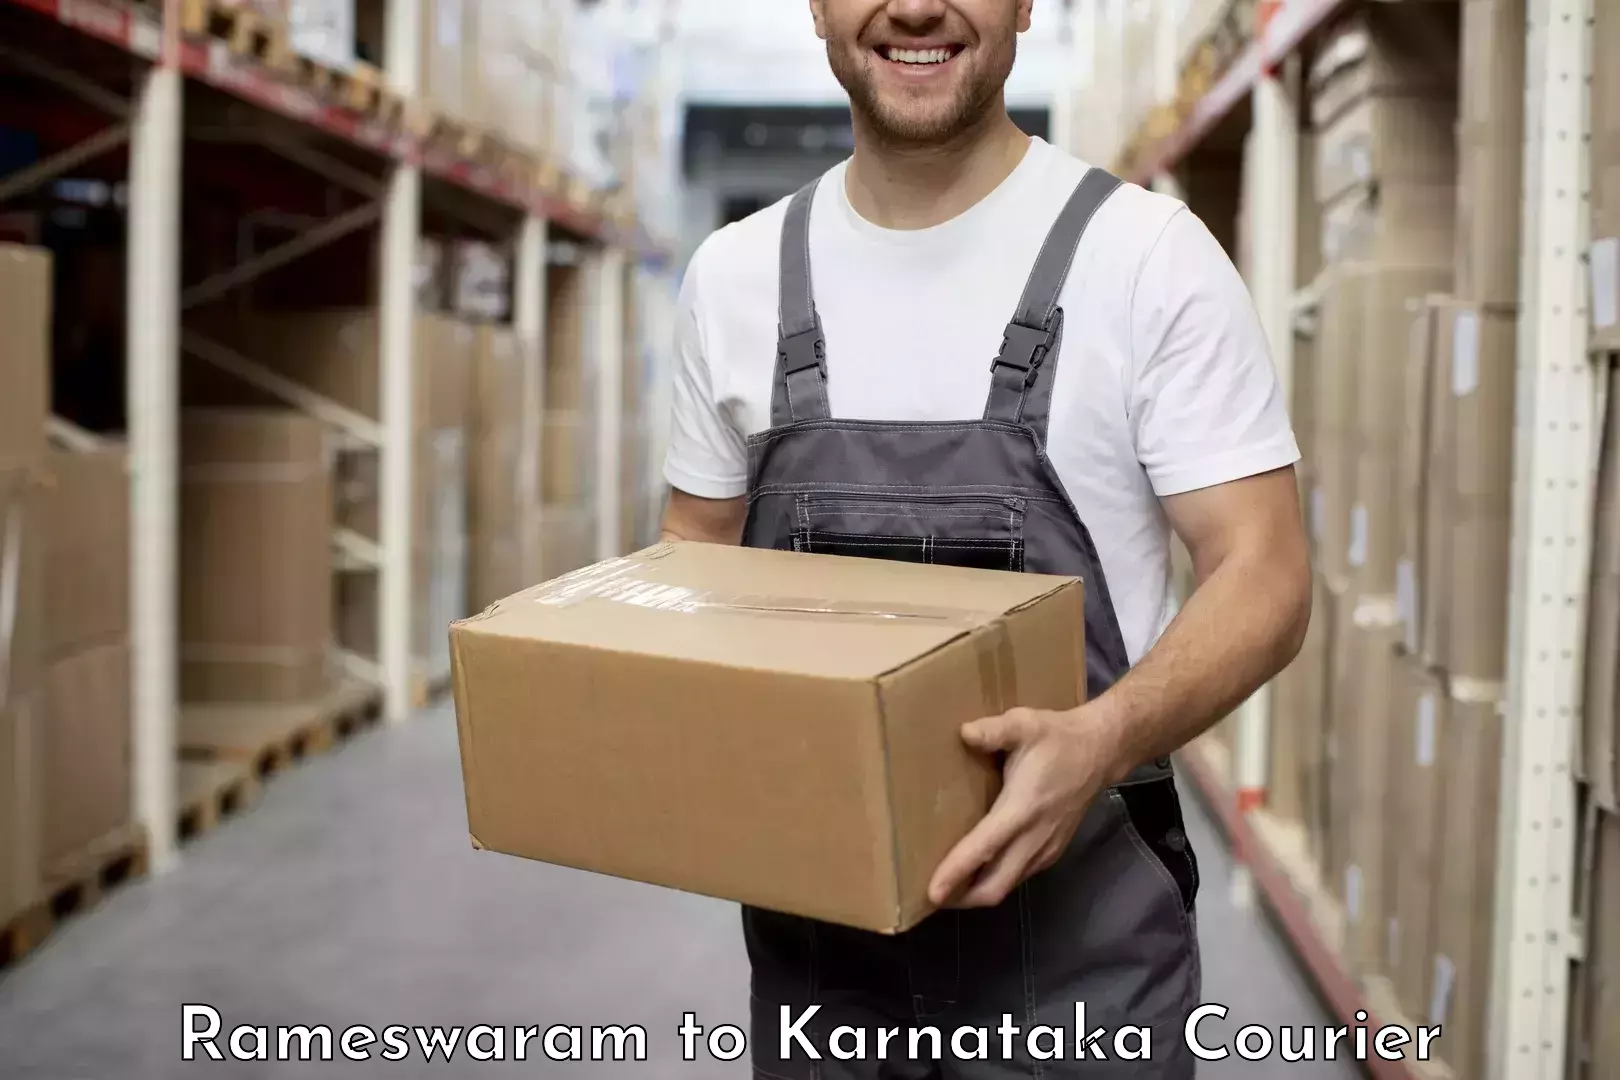 Urgent courier needs Rameswaram to Karnataka